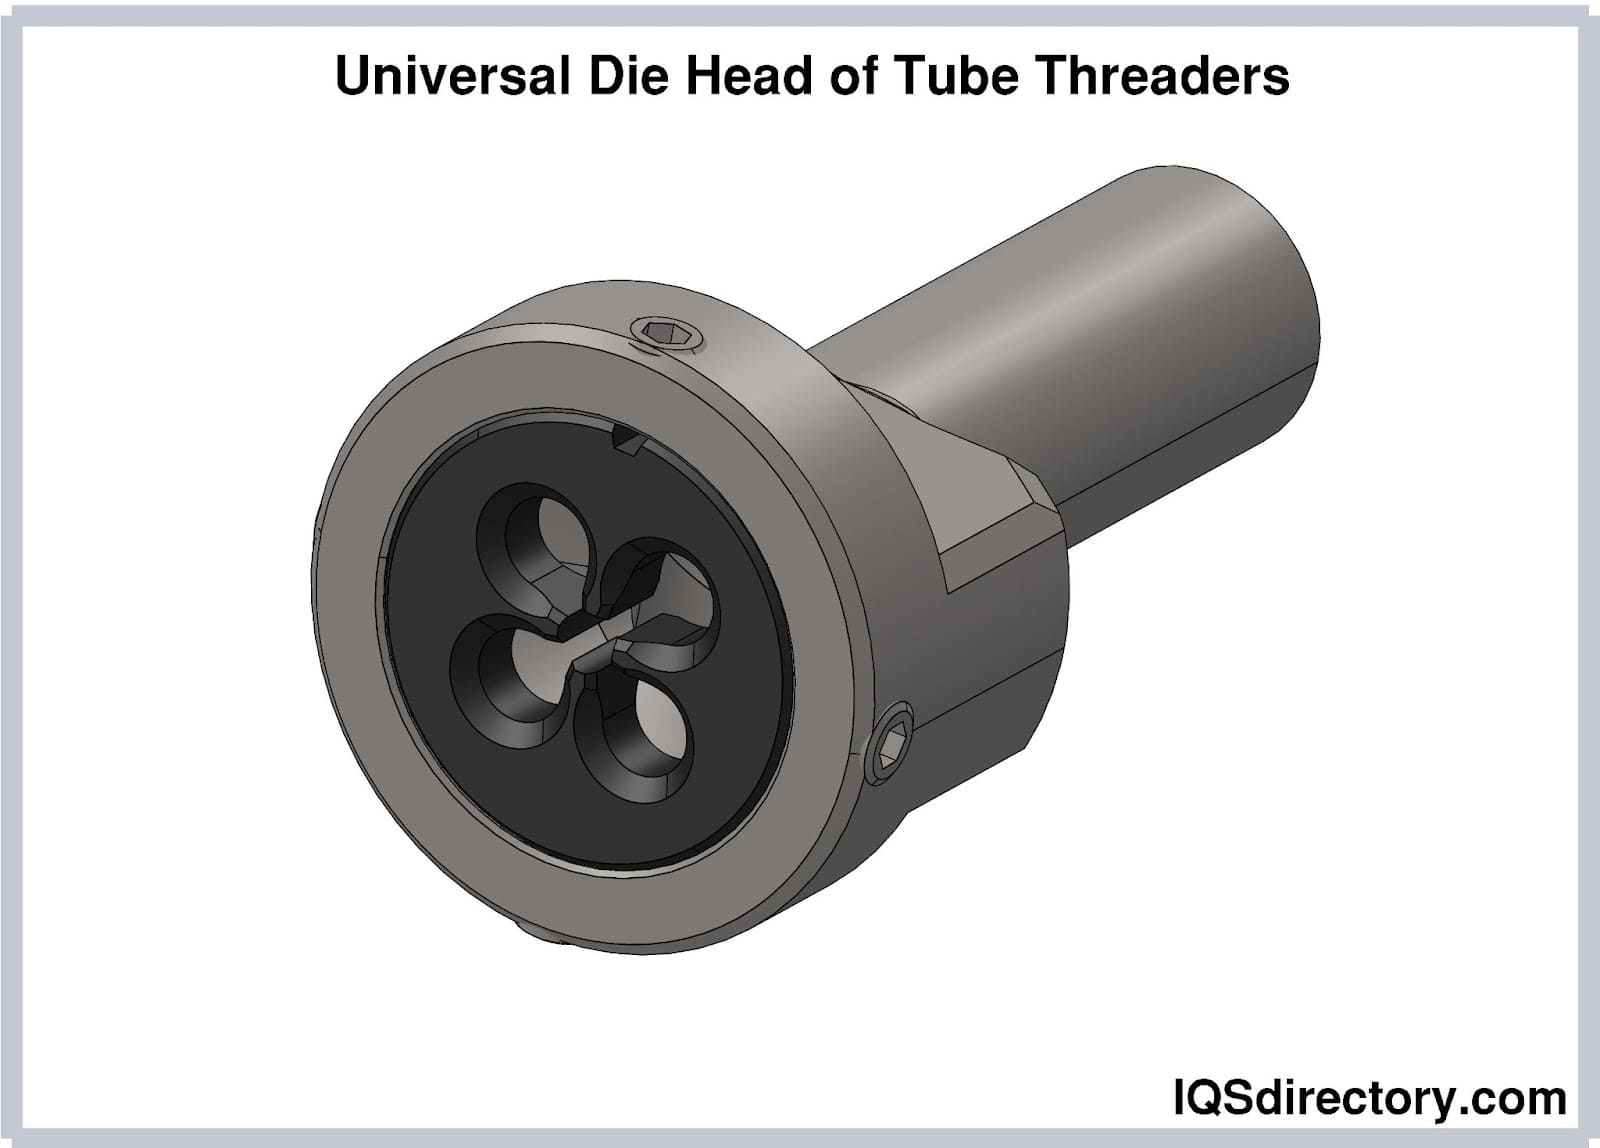 Universal Die Head of Tube Threaders